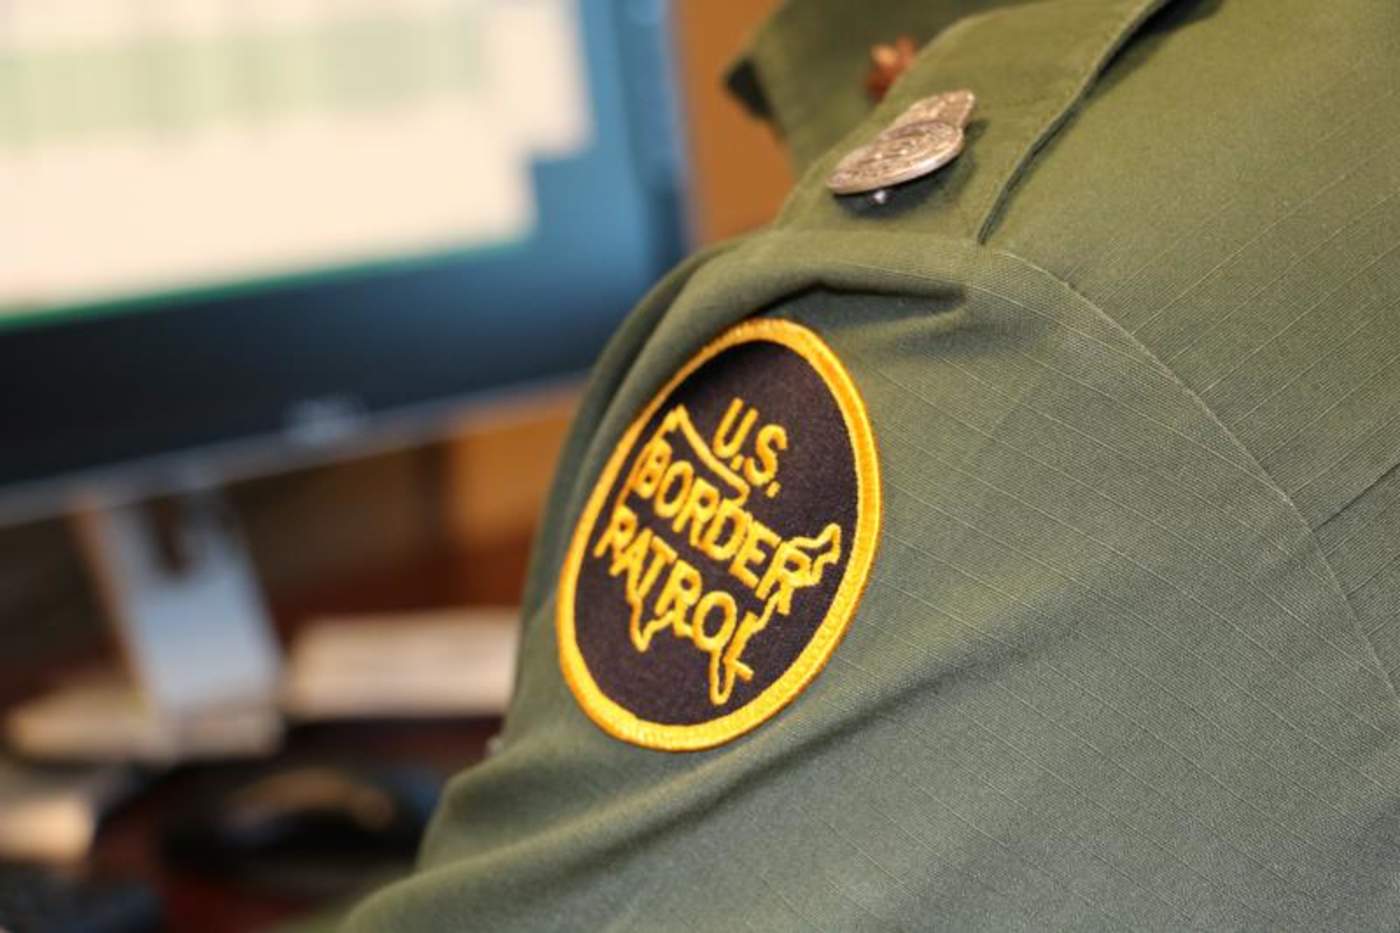 La detención del hombre de 29 años de edad y originario de El Salvador, se registró el sábado pasado, precisamente cuando los agentes de la Patrulla Fronteriza realizaban operaciones de vigilancia de línea, cerca de Eagle Pass. 